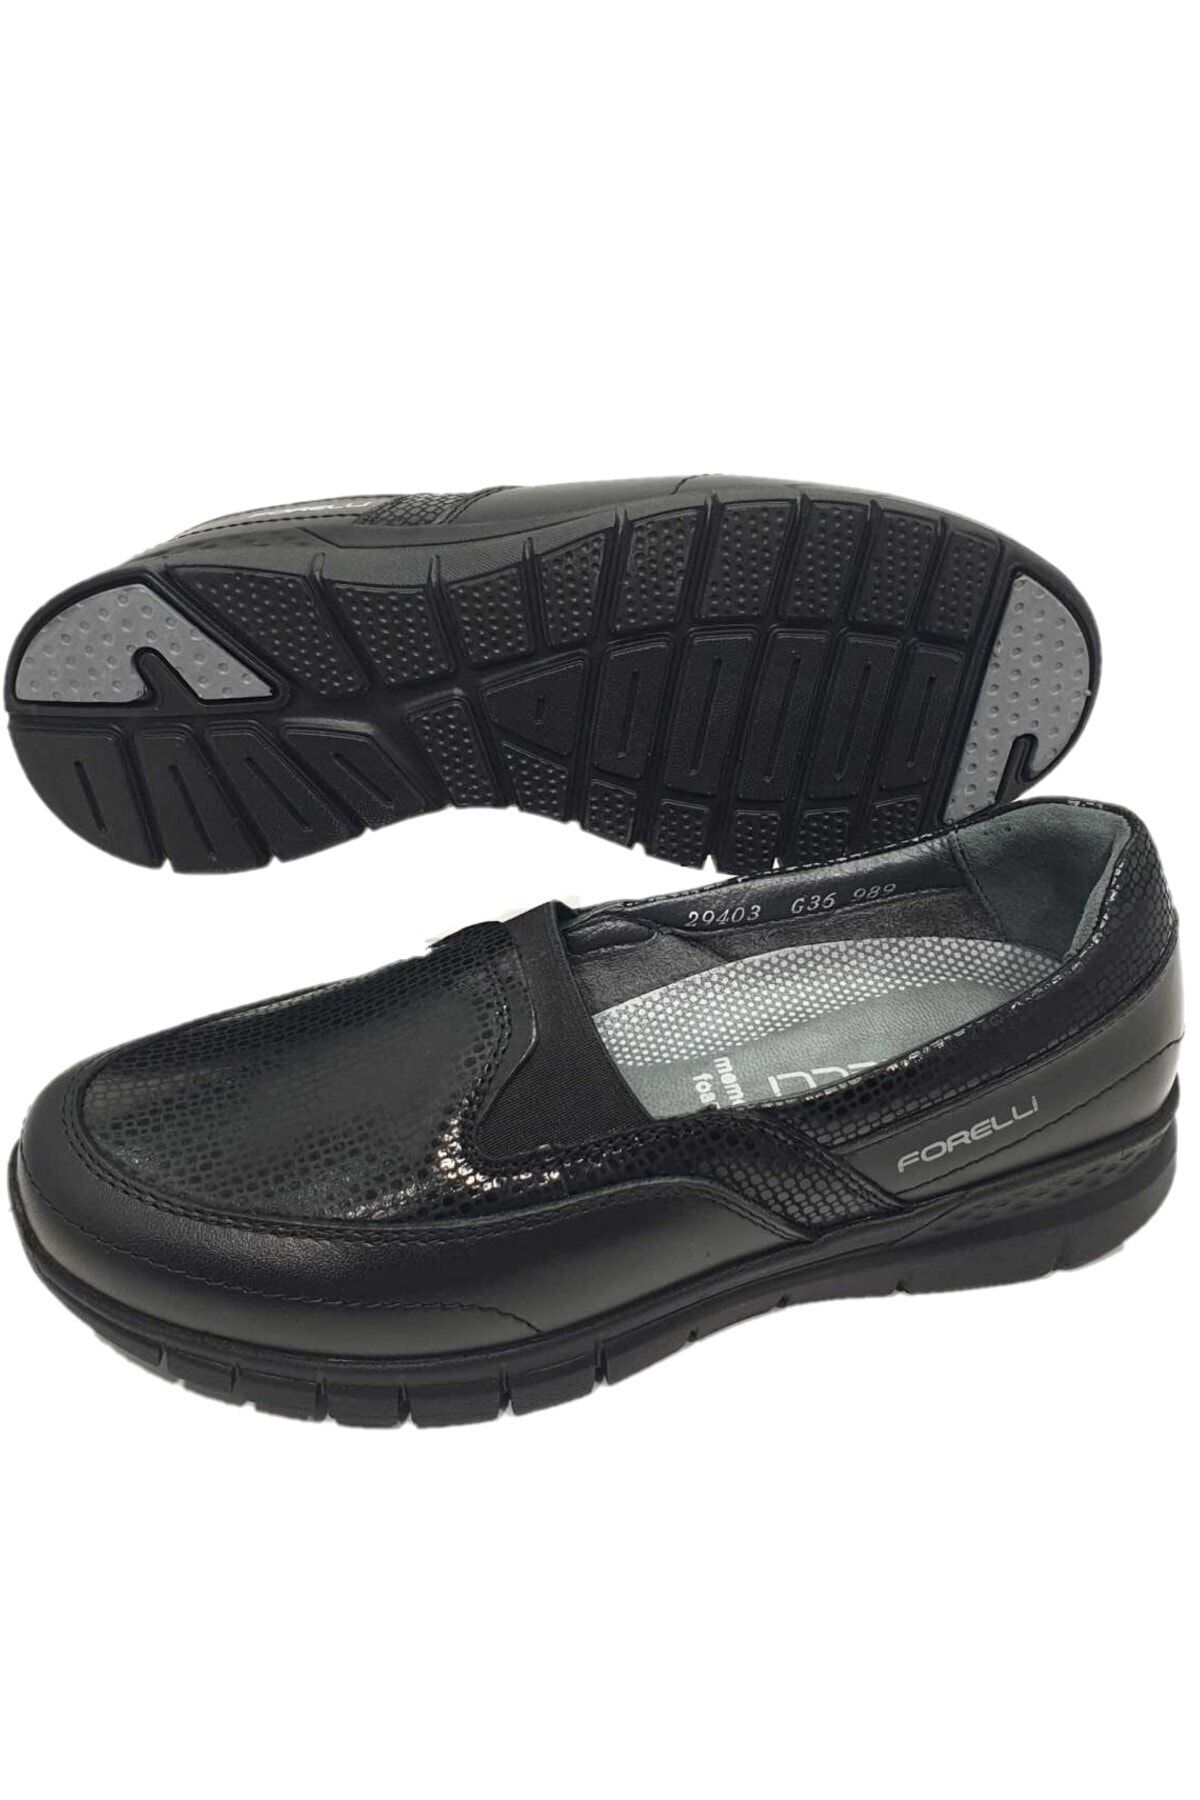 Forelli Efes-g Comfort Kadın Ayakkabı Siyah